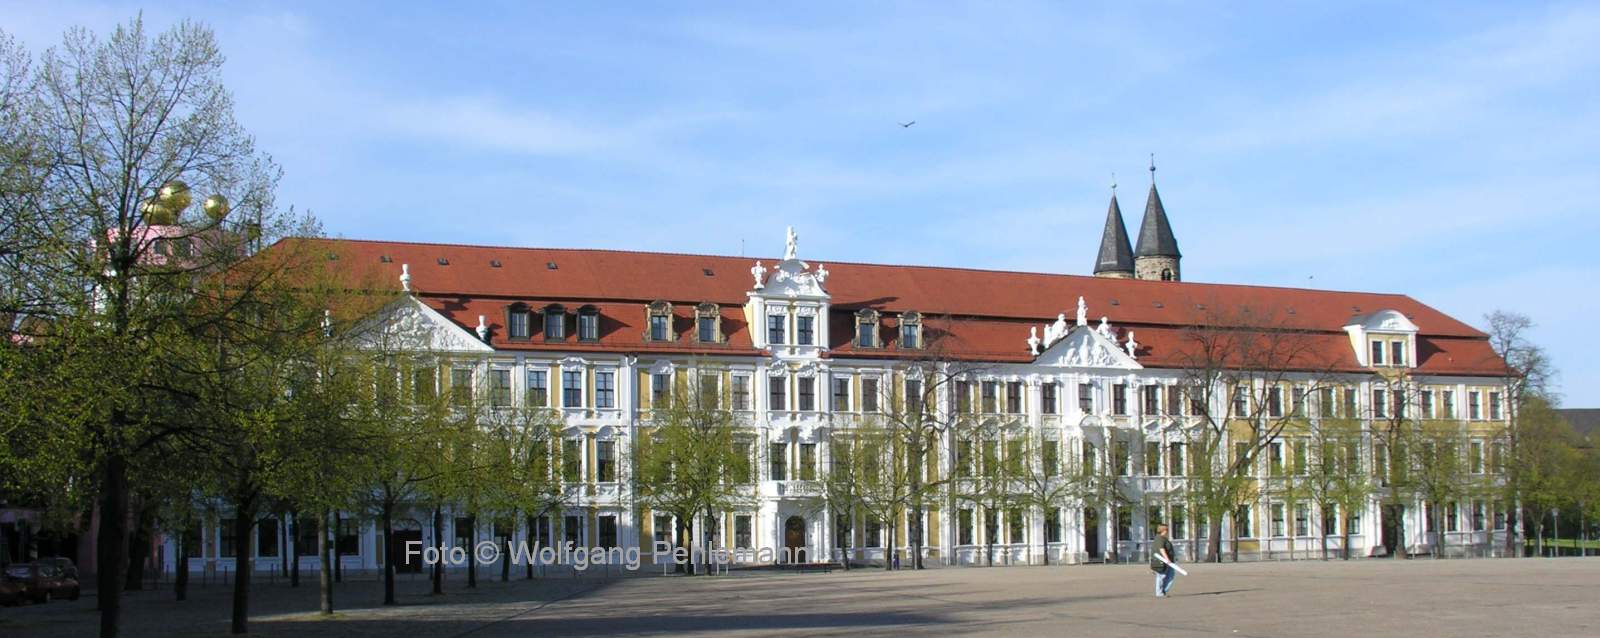 Landtag von Sachsen-Anhalt am Domplatz in Magdeburg - Foto © Wolfgang Pehlemann